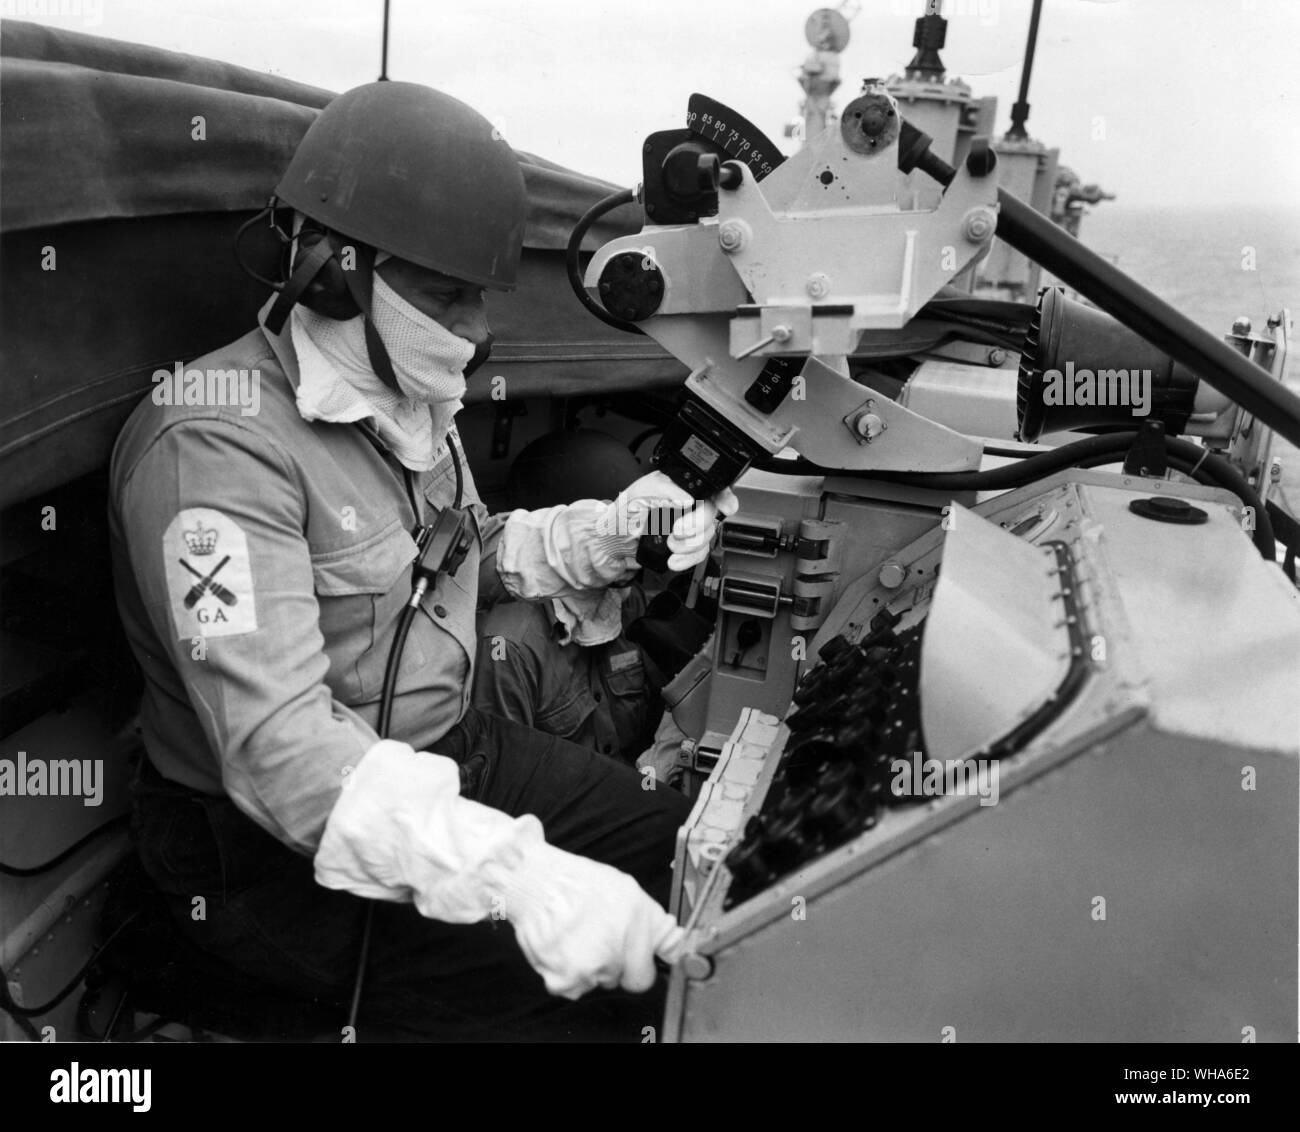 A bordo de un destructor de misiles guiados. Seaman ( tiro ) manning un incendio posición de control. Julio de 1963 Foto de stock